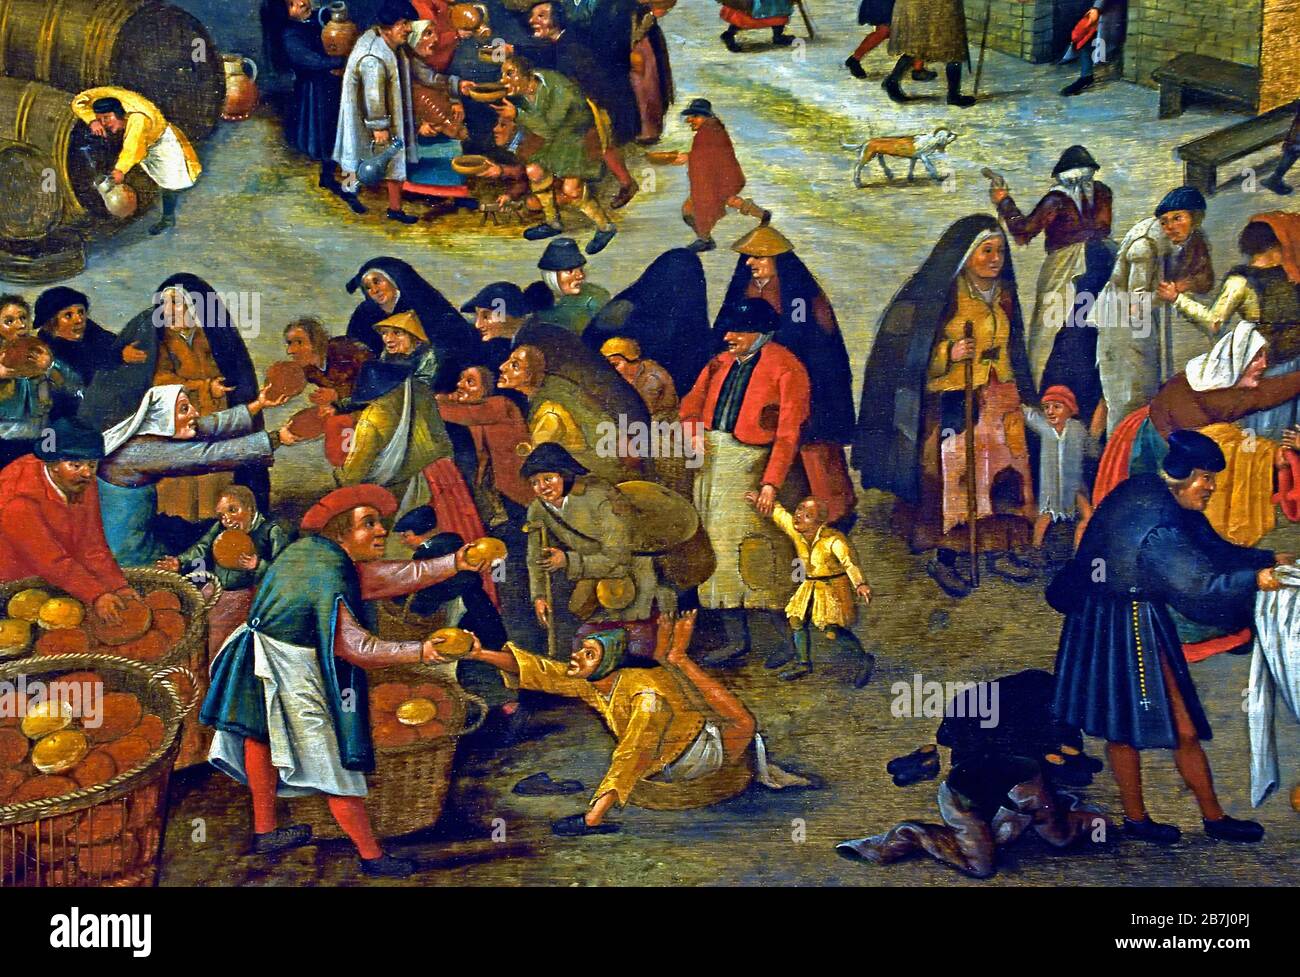 Sieben Werke der Barmherzigkeit 1616 Pieter Brueghel der Jüngere 1564-1637, die Familie Brueghel ( Bruegel oder Breughel ), flämische Maler 16.-17. Jahrhundert, Belgier, Belgien. Stockfoto